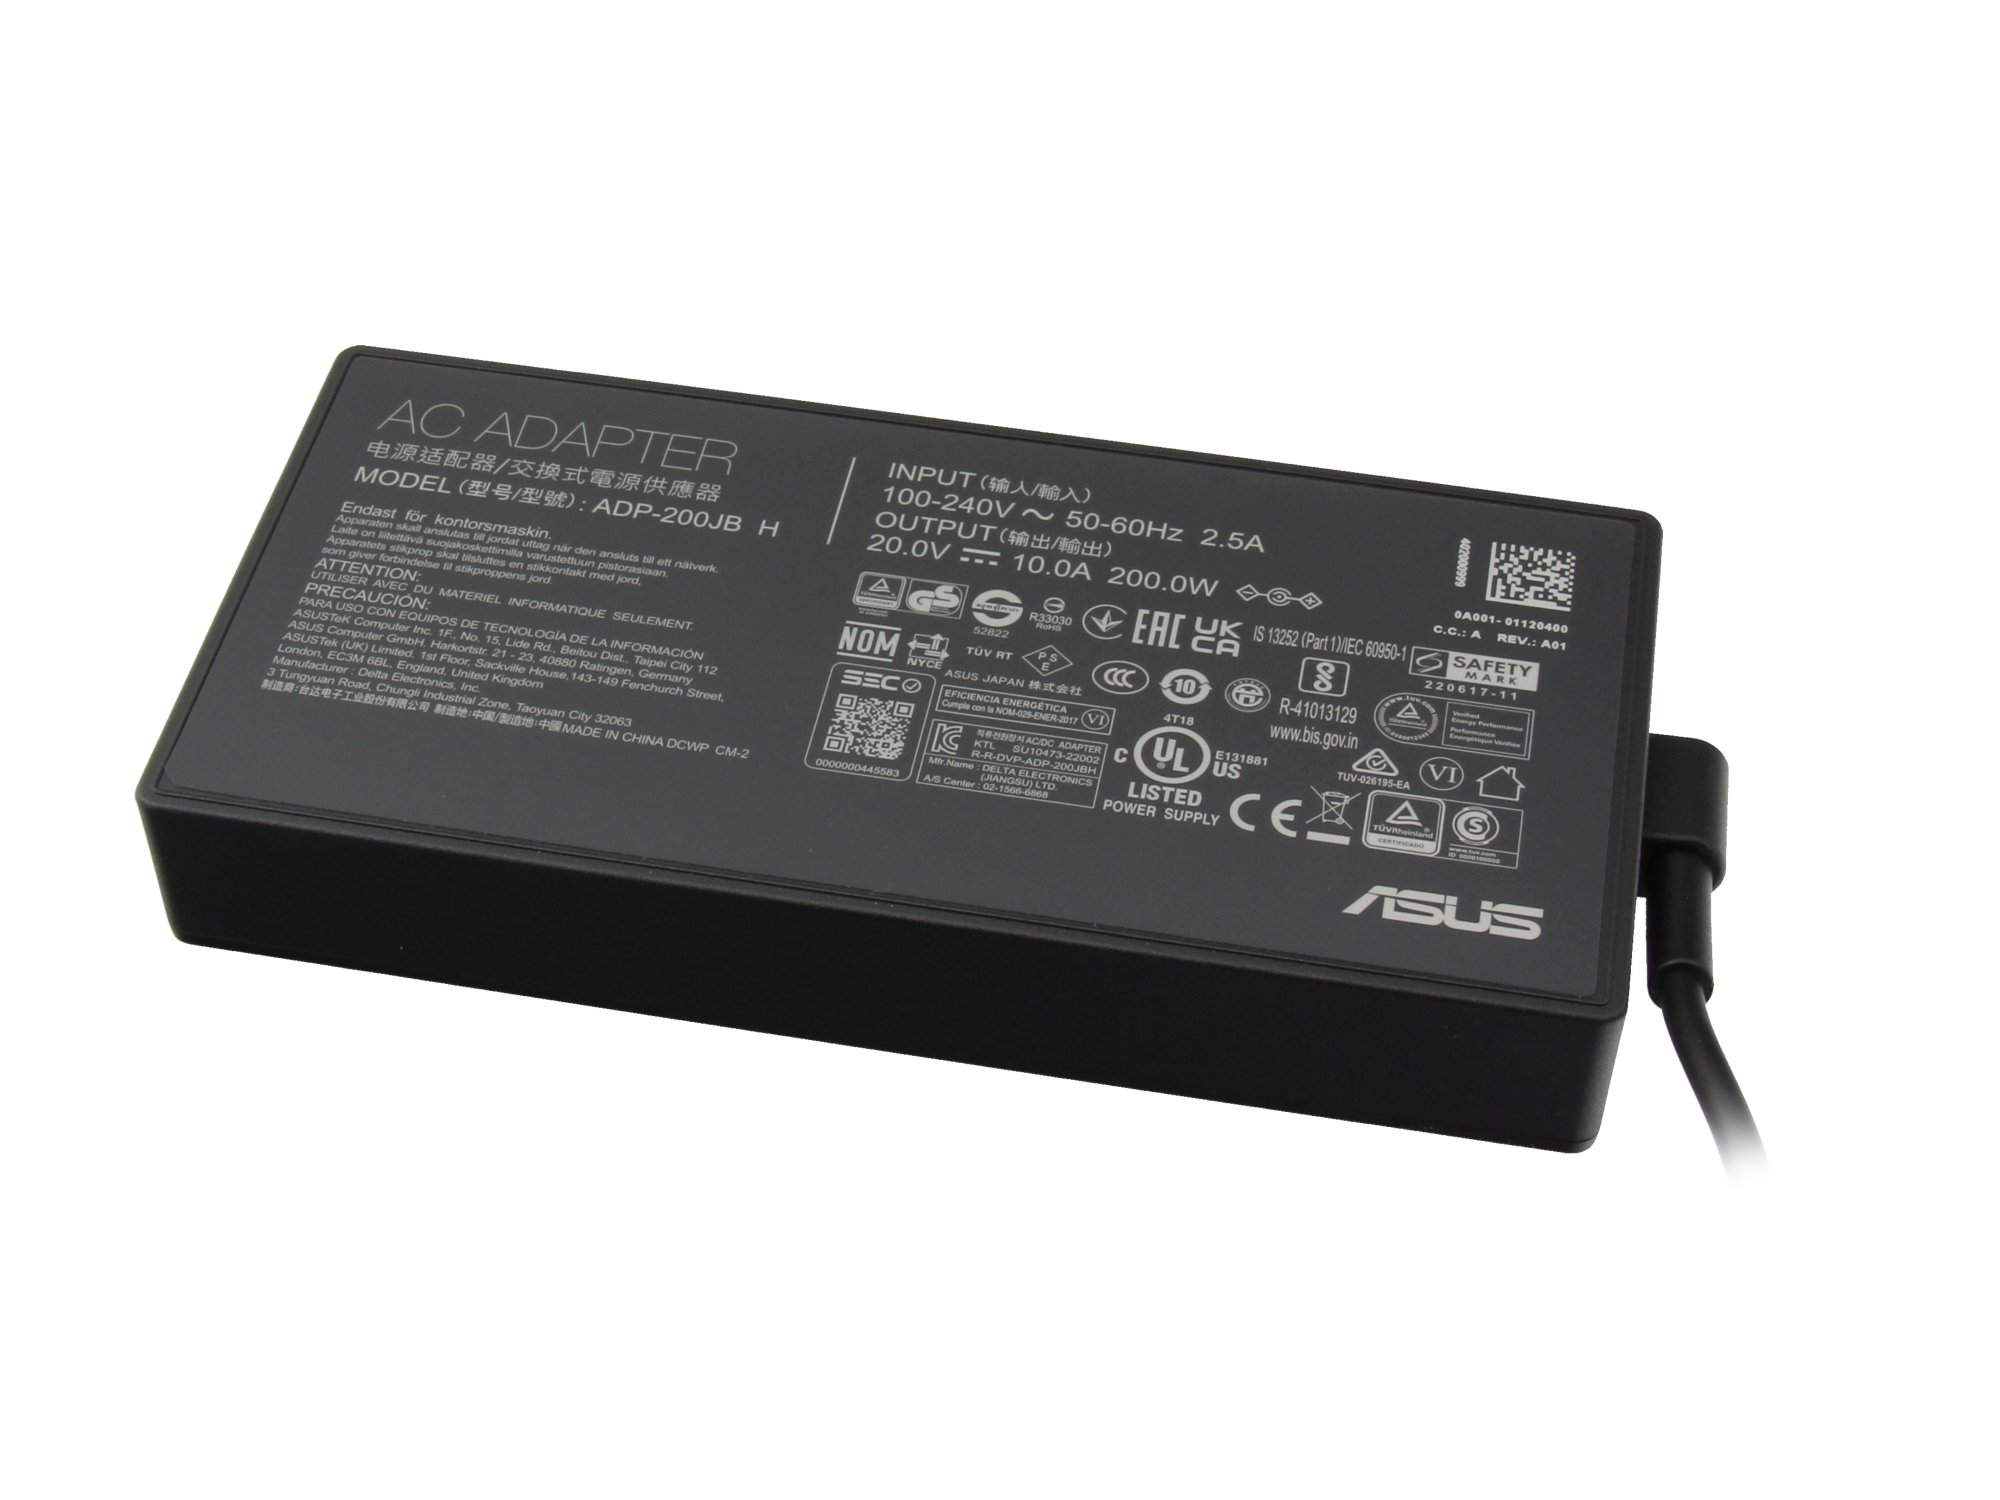 ASUS 0A001-01120500 Netzteil 200 Watt